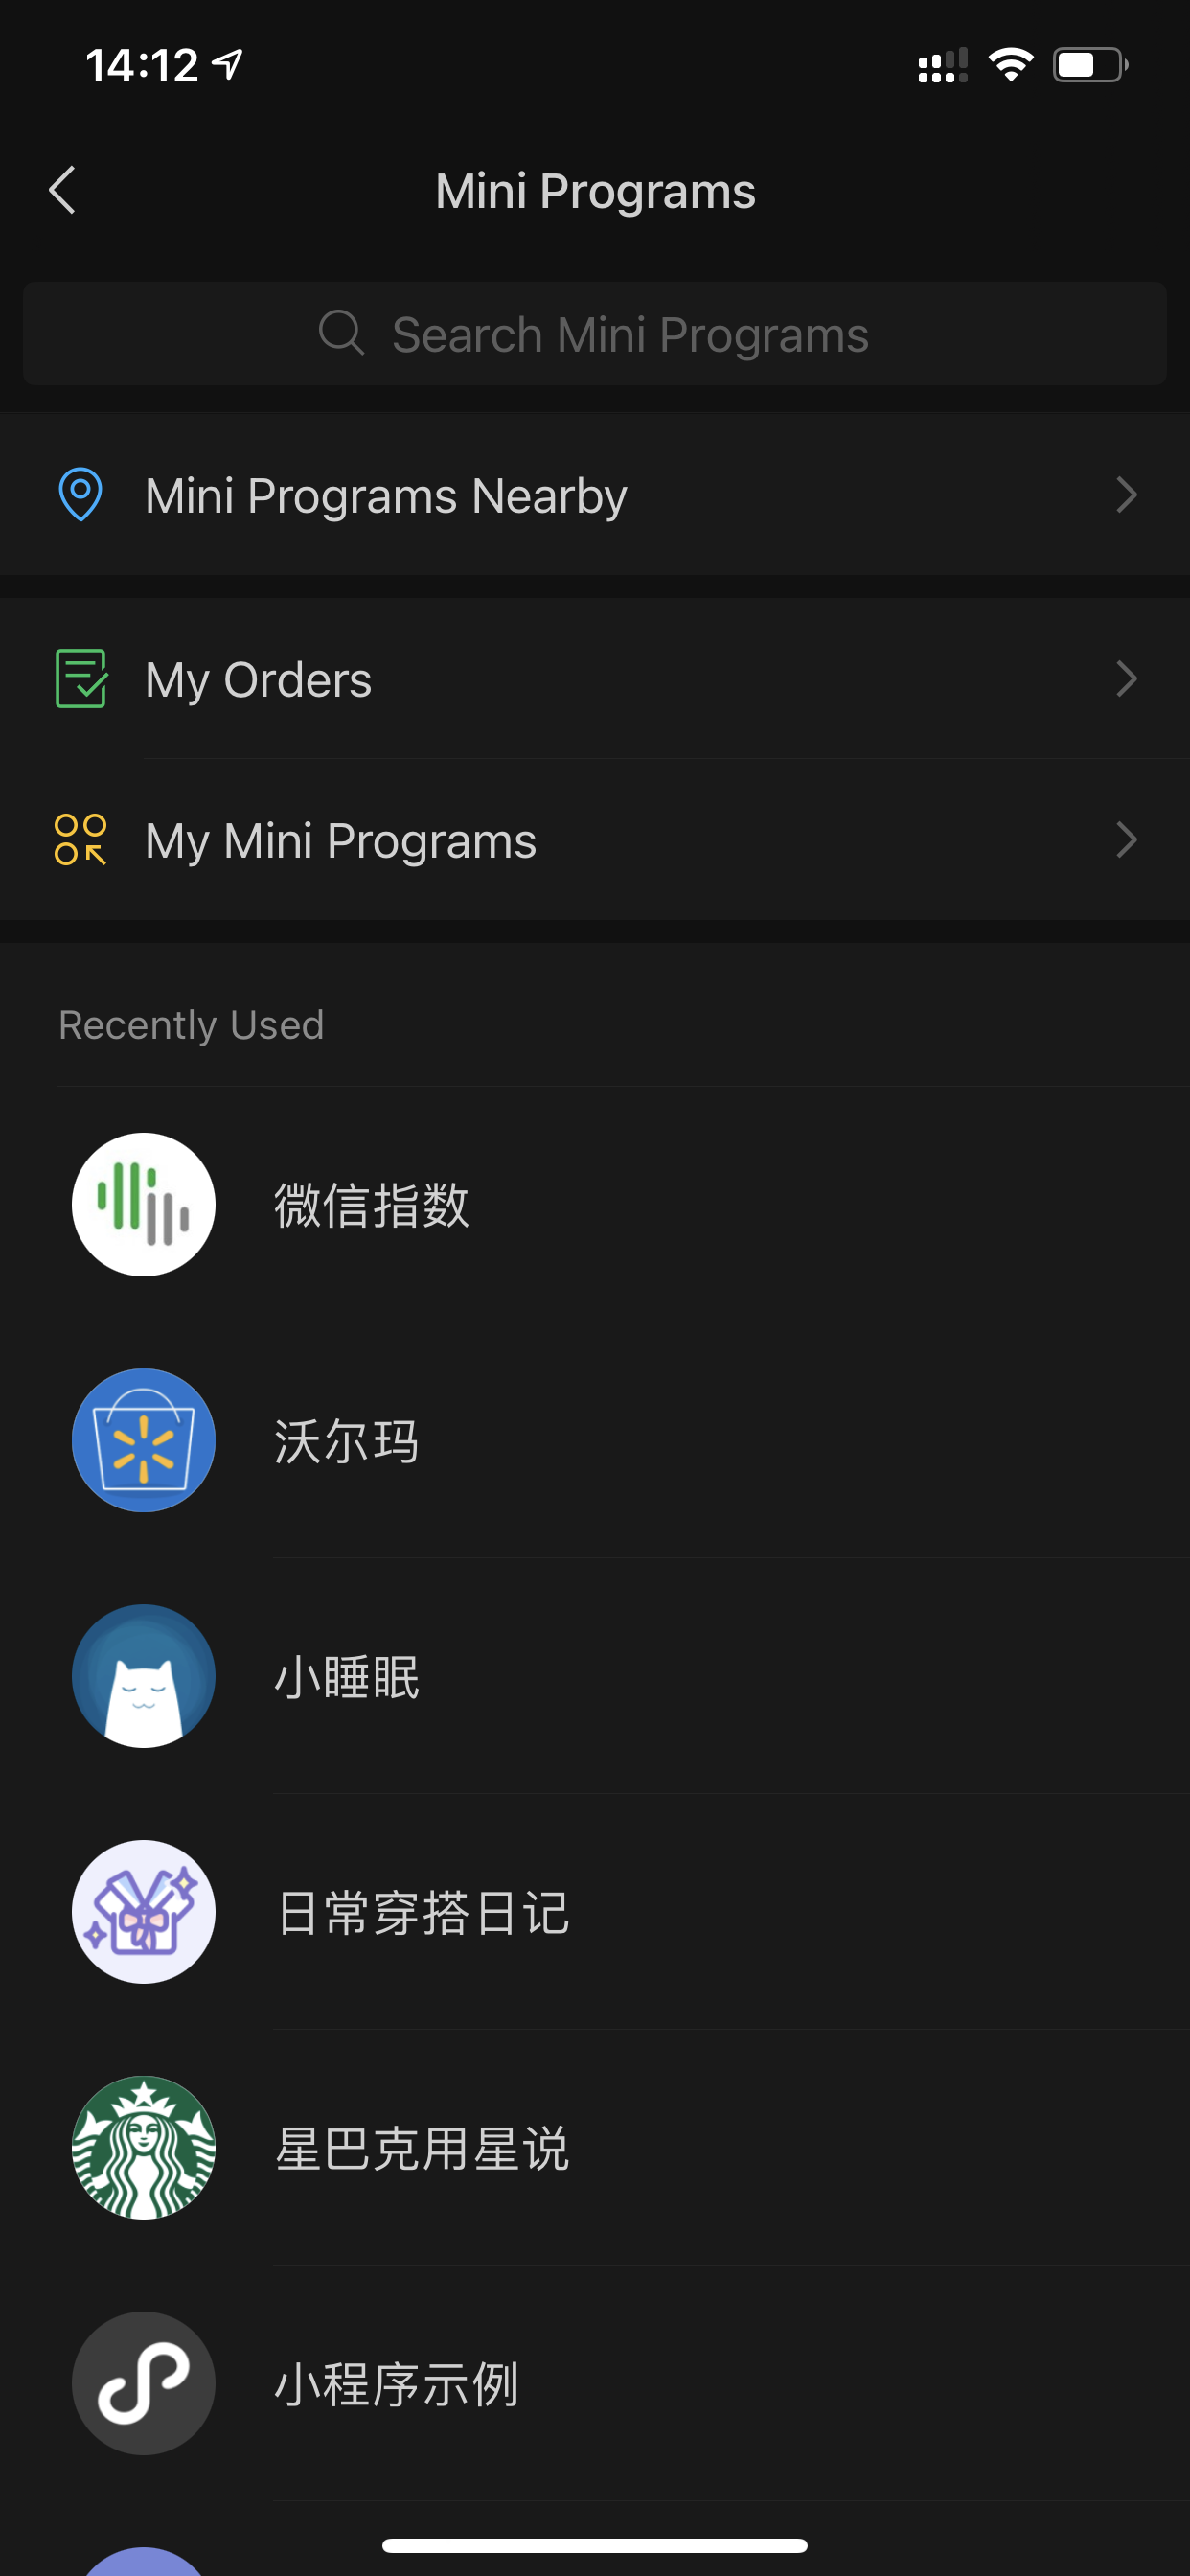 รายการมินิแอปที่เพิ่งเปิดตัวในแอประดับสูงของ WeChat